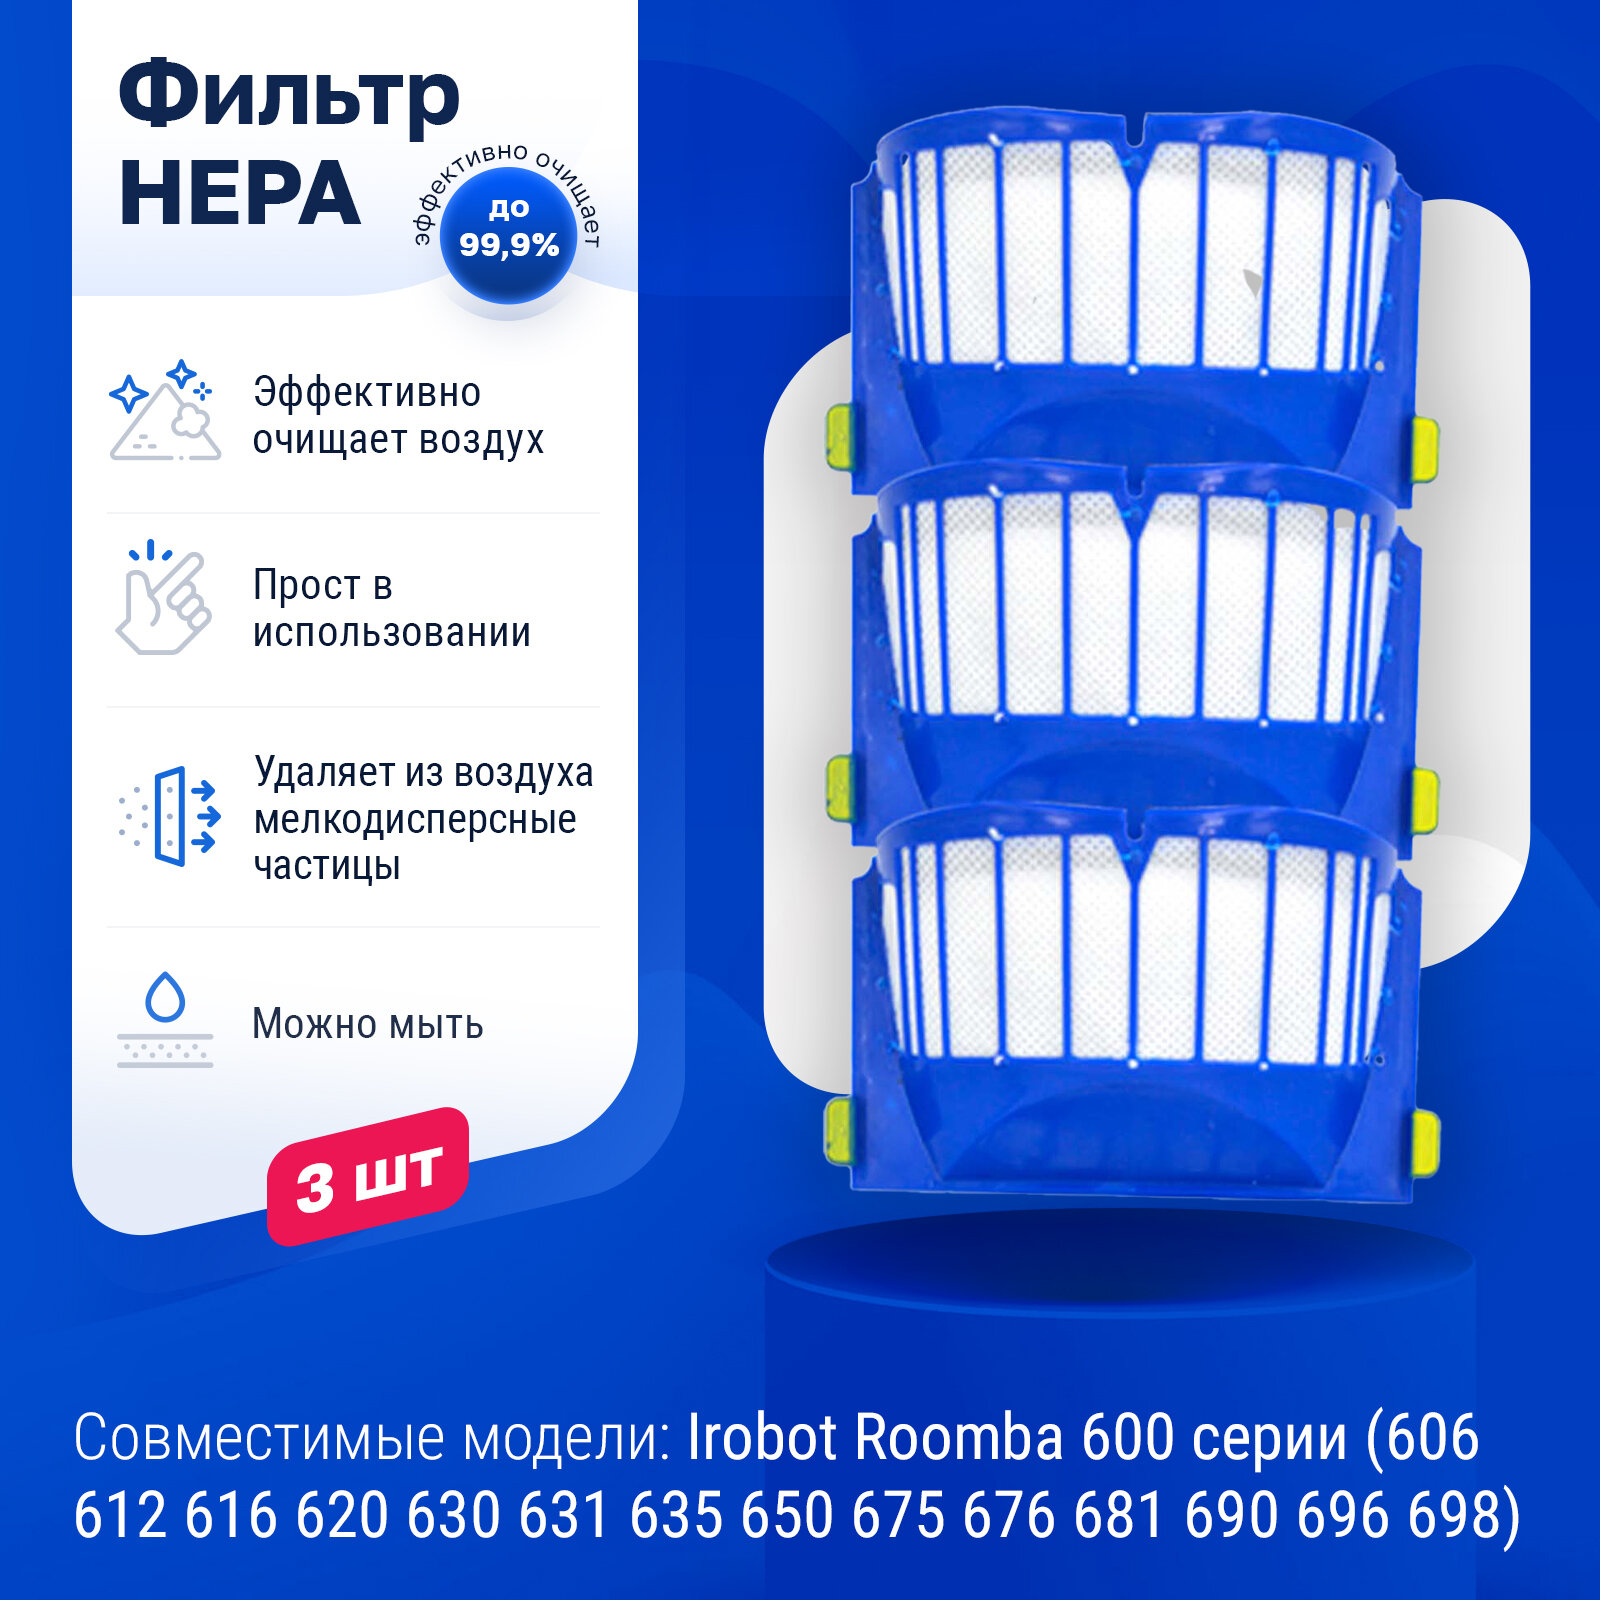 Комплект фильтров для робота пылесоса Irobot Roomba 600 серии (606, 612,616, 620, 630, 631, 635, 650, 675, 676, 681, 690, 696, 698)